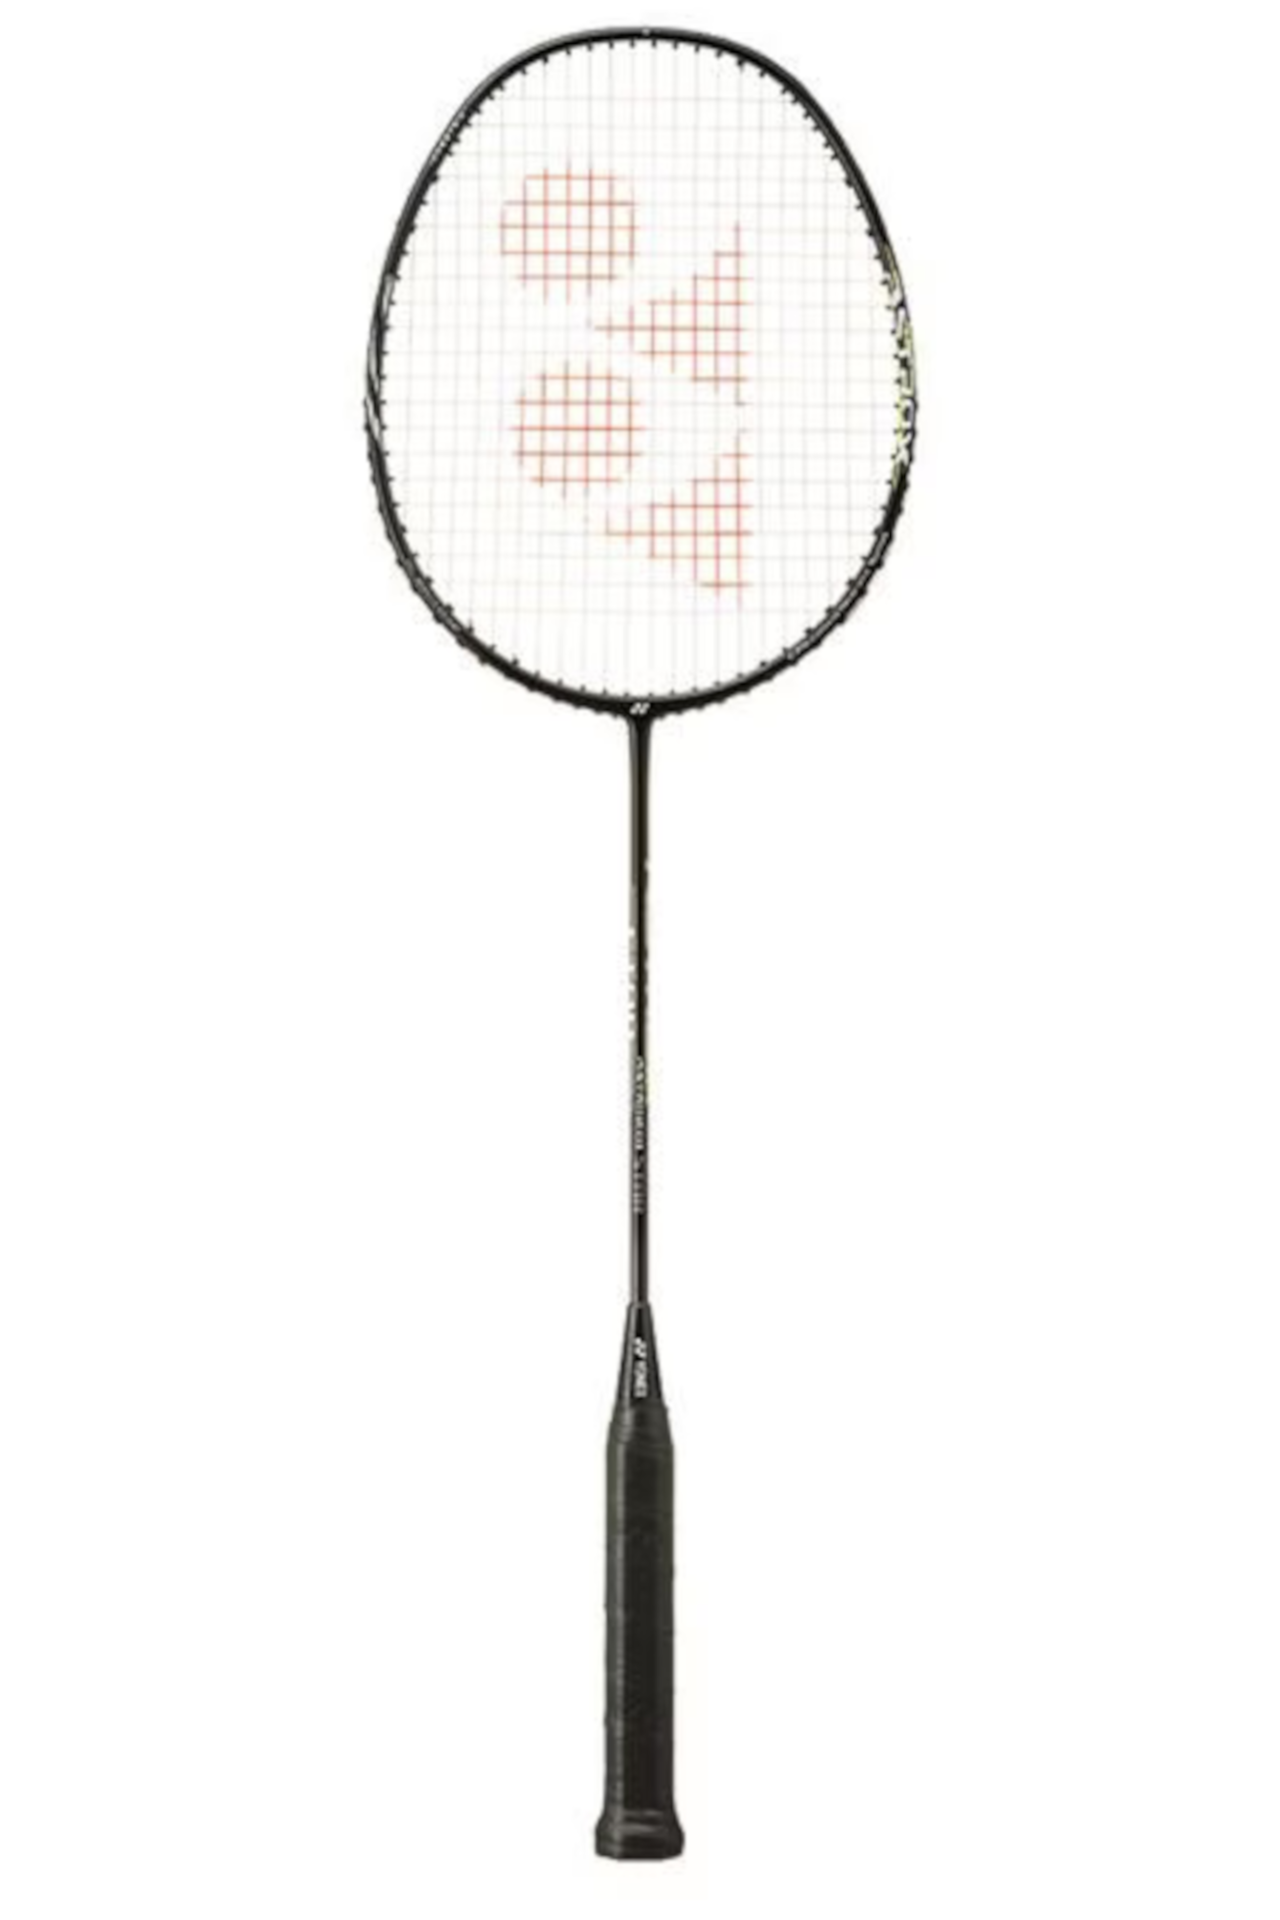 Astrox 01 Star (83g / 4Ug4)  Badminton Raketi - Siyah/Gri | Yonex